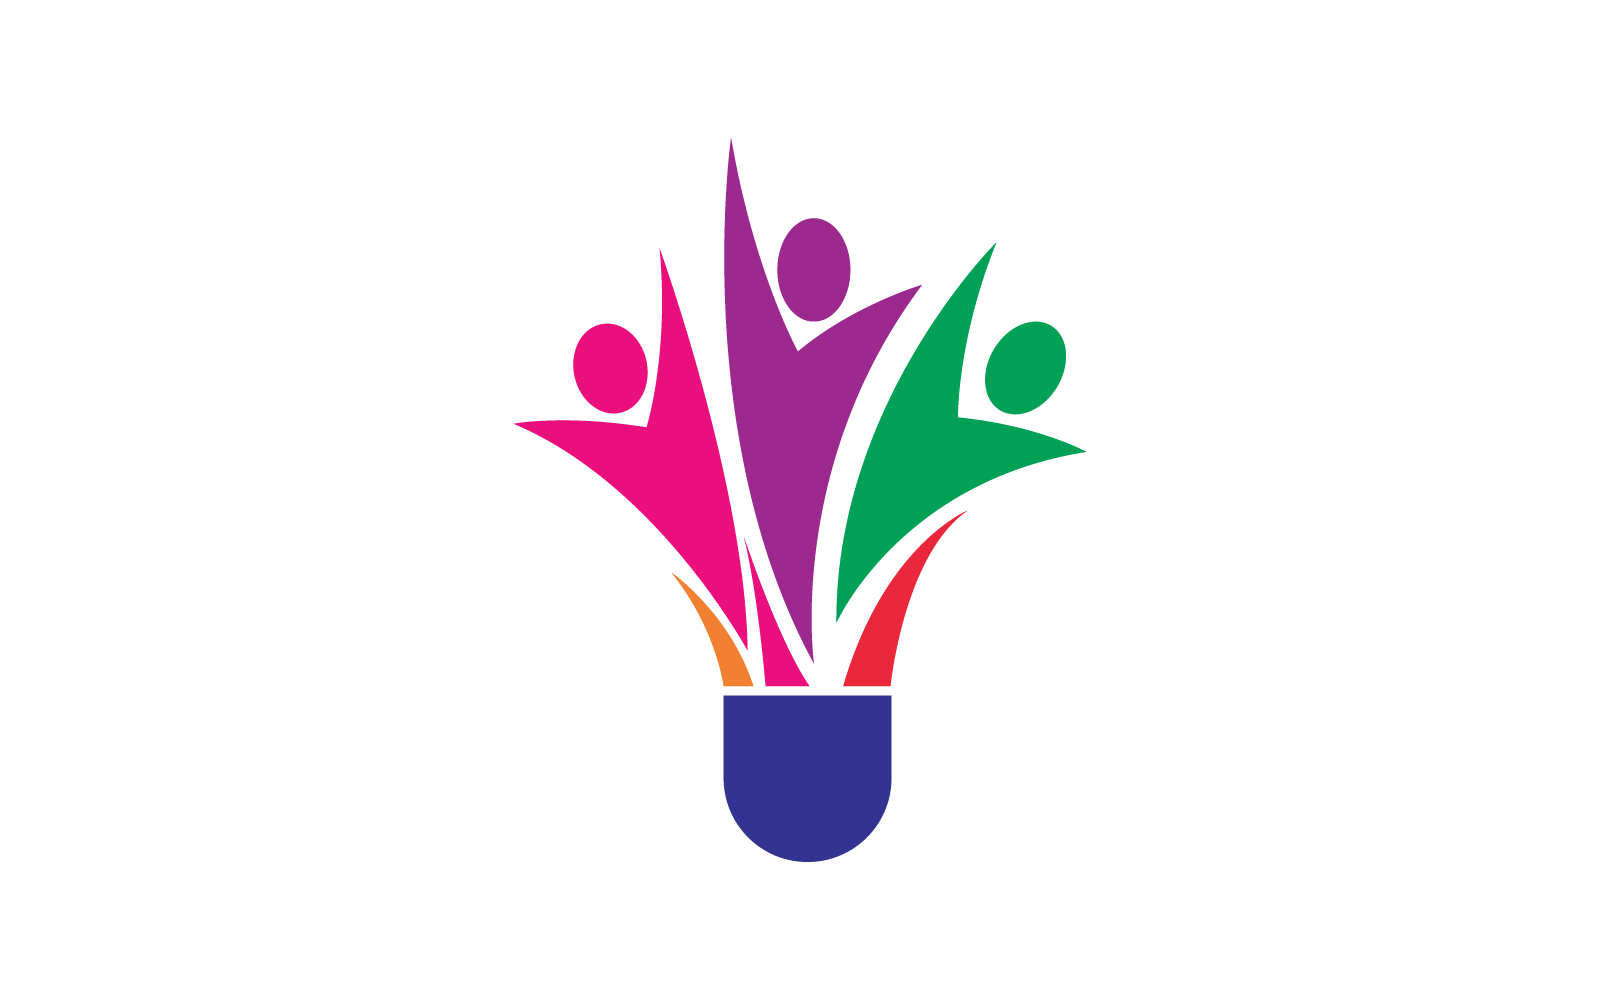 Suttle cock badminton logo vector design